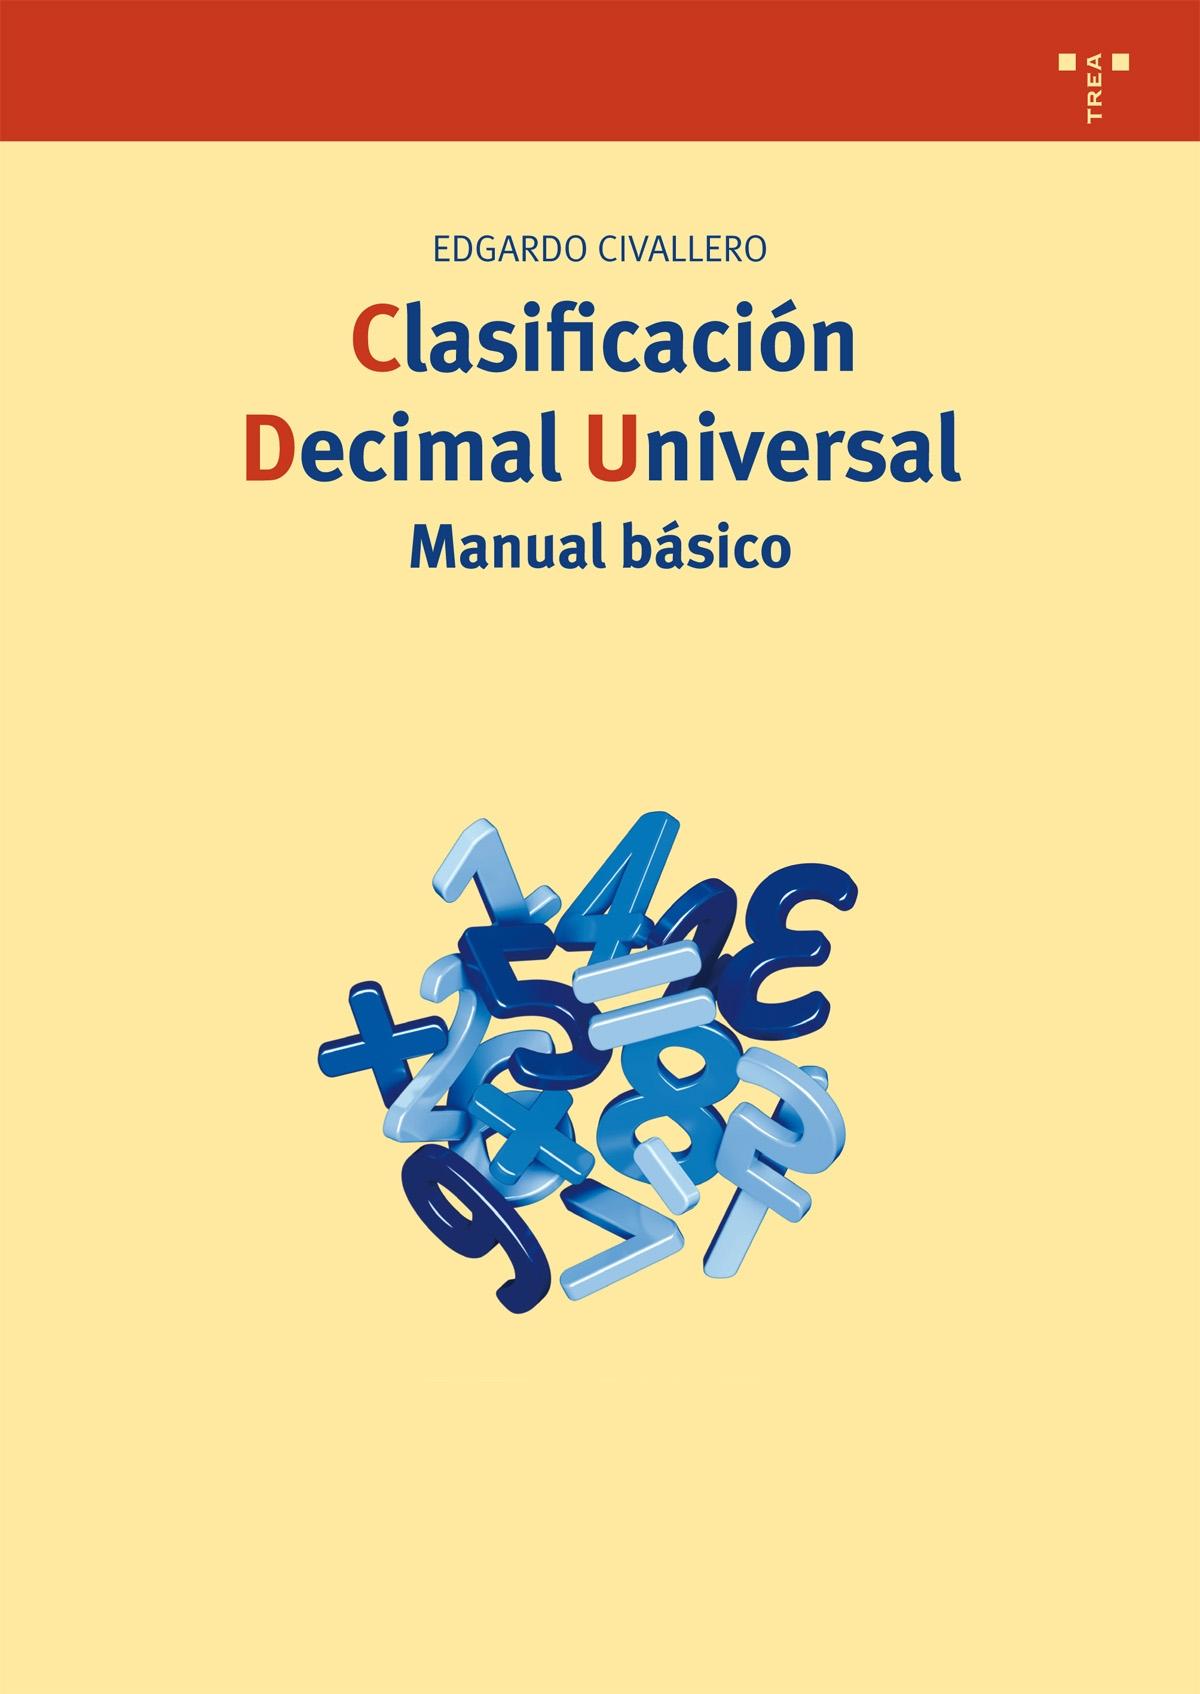 CLASIFICACIÓN DECIMAL UNIVERSAL "MANUAL BÁSICO". 